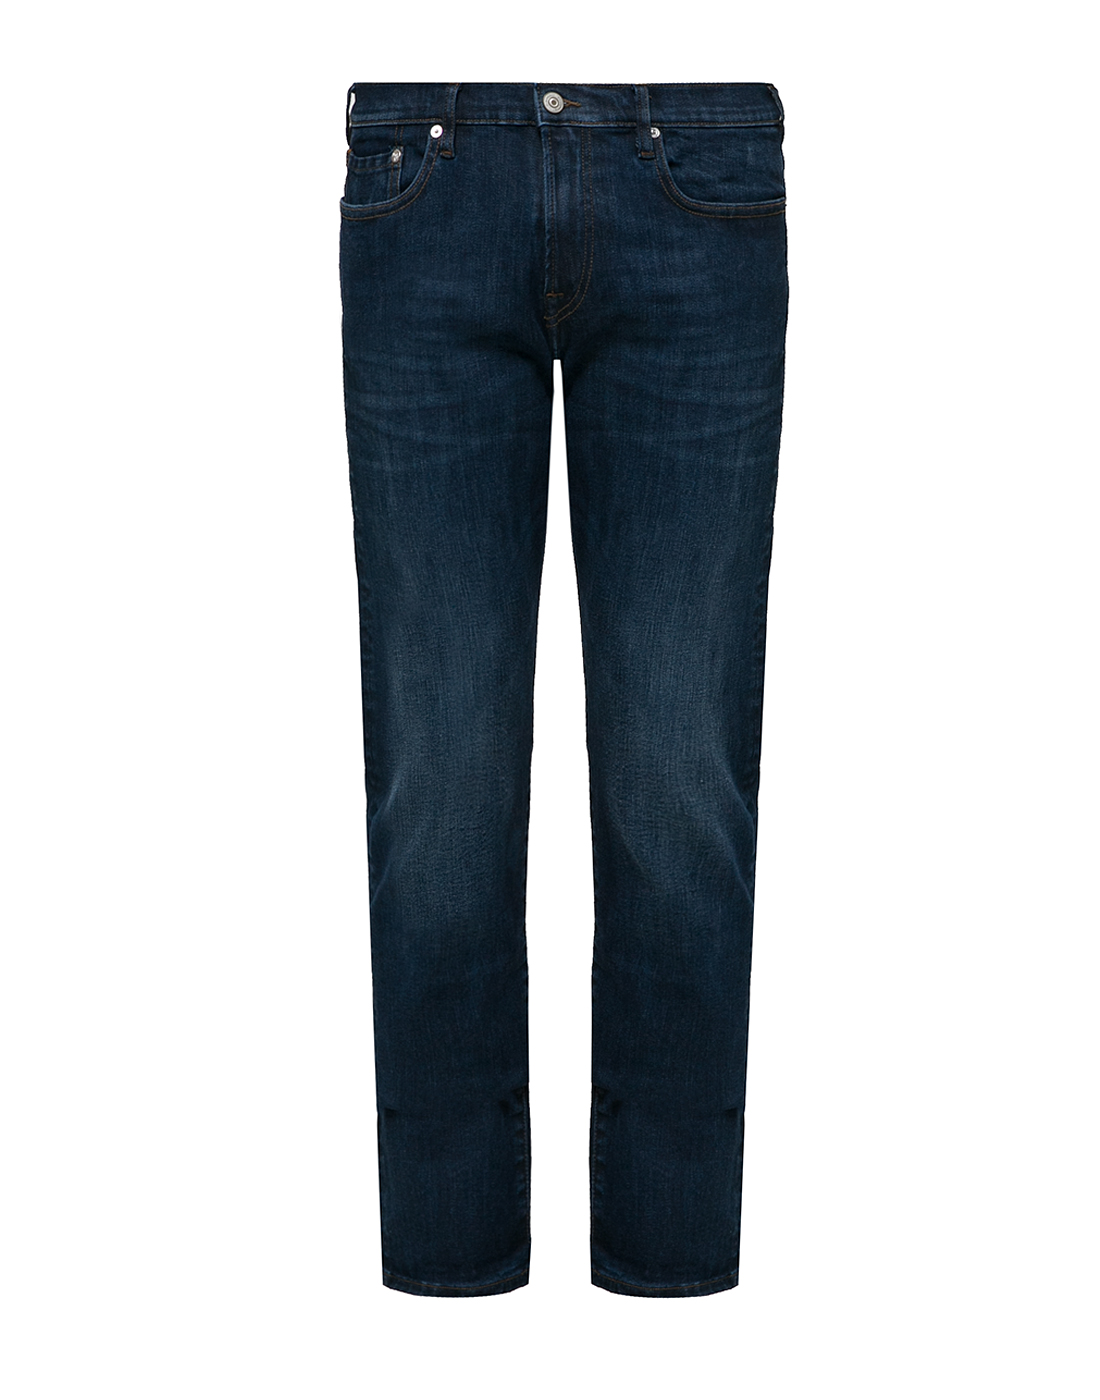 Мужские темно-синие джинсы Tapered Fit Paul Smith SM2R-301ZW-D20007-BLUE-1